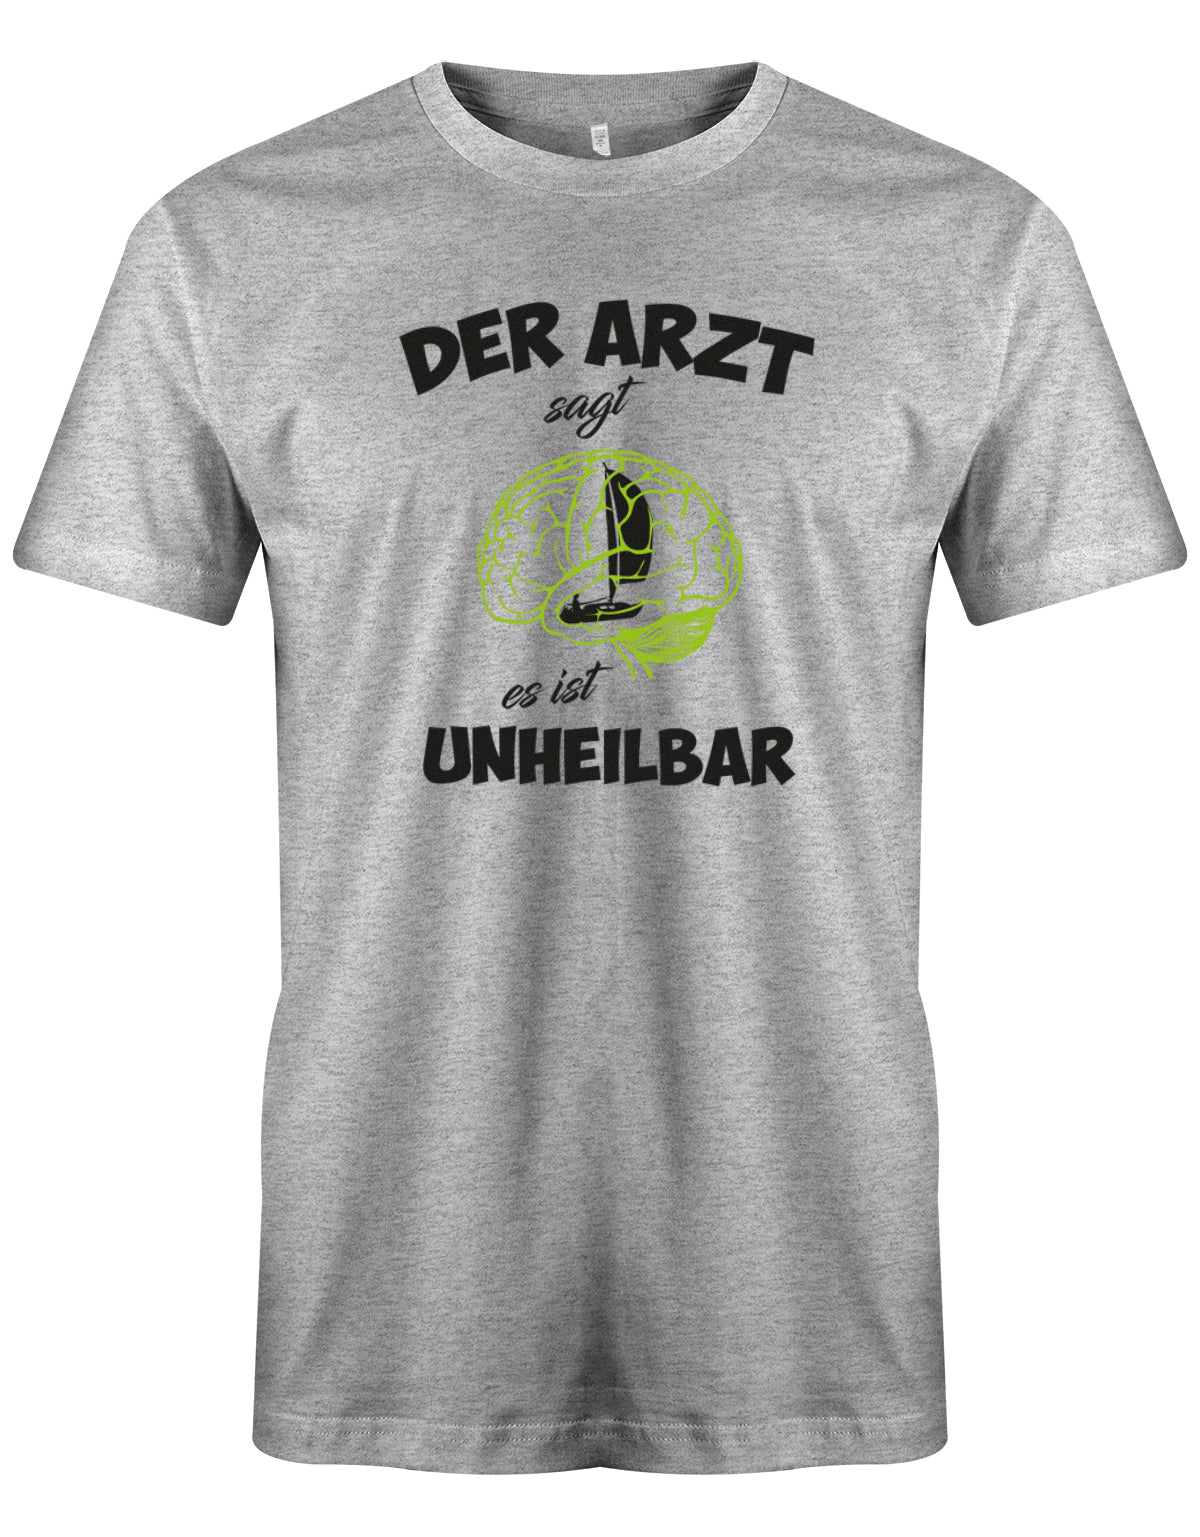 Das lustige Segler t-shirt bedruckt mit "Der Arzt sagt es ist unheilbar. Nur Segeln im Hirn". Grau